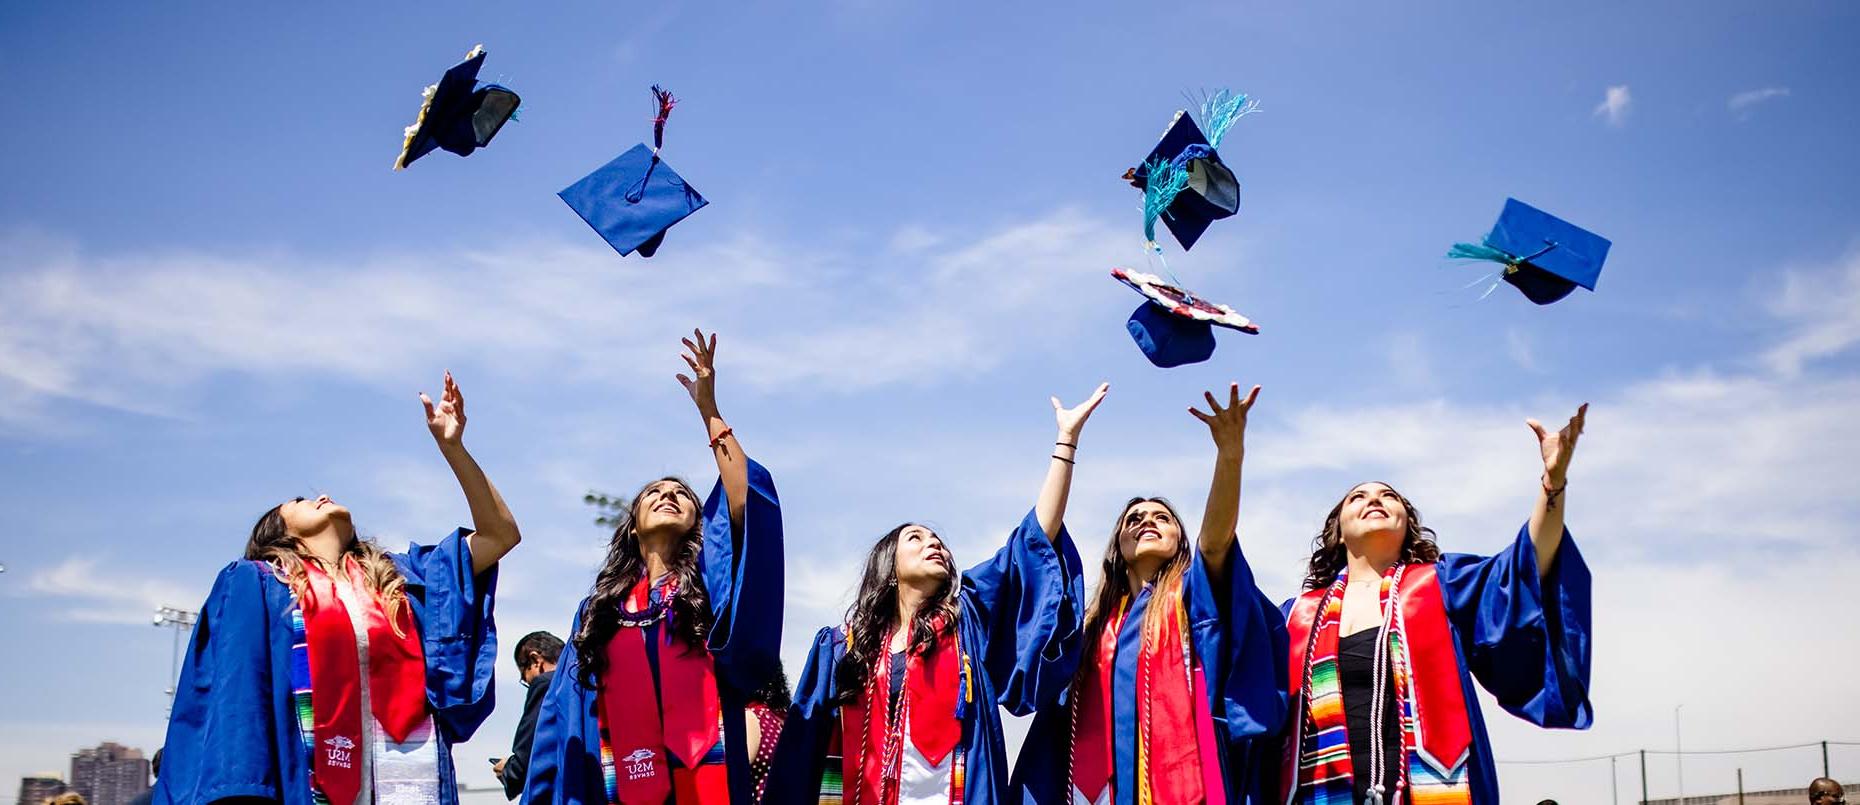 密歇根州立大学丹佛 graduates throwing their caps in the air.